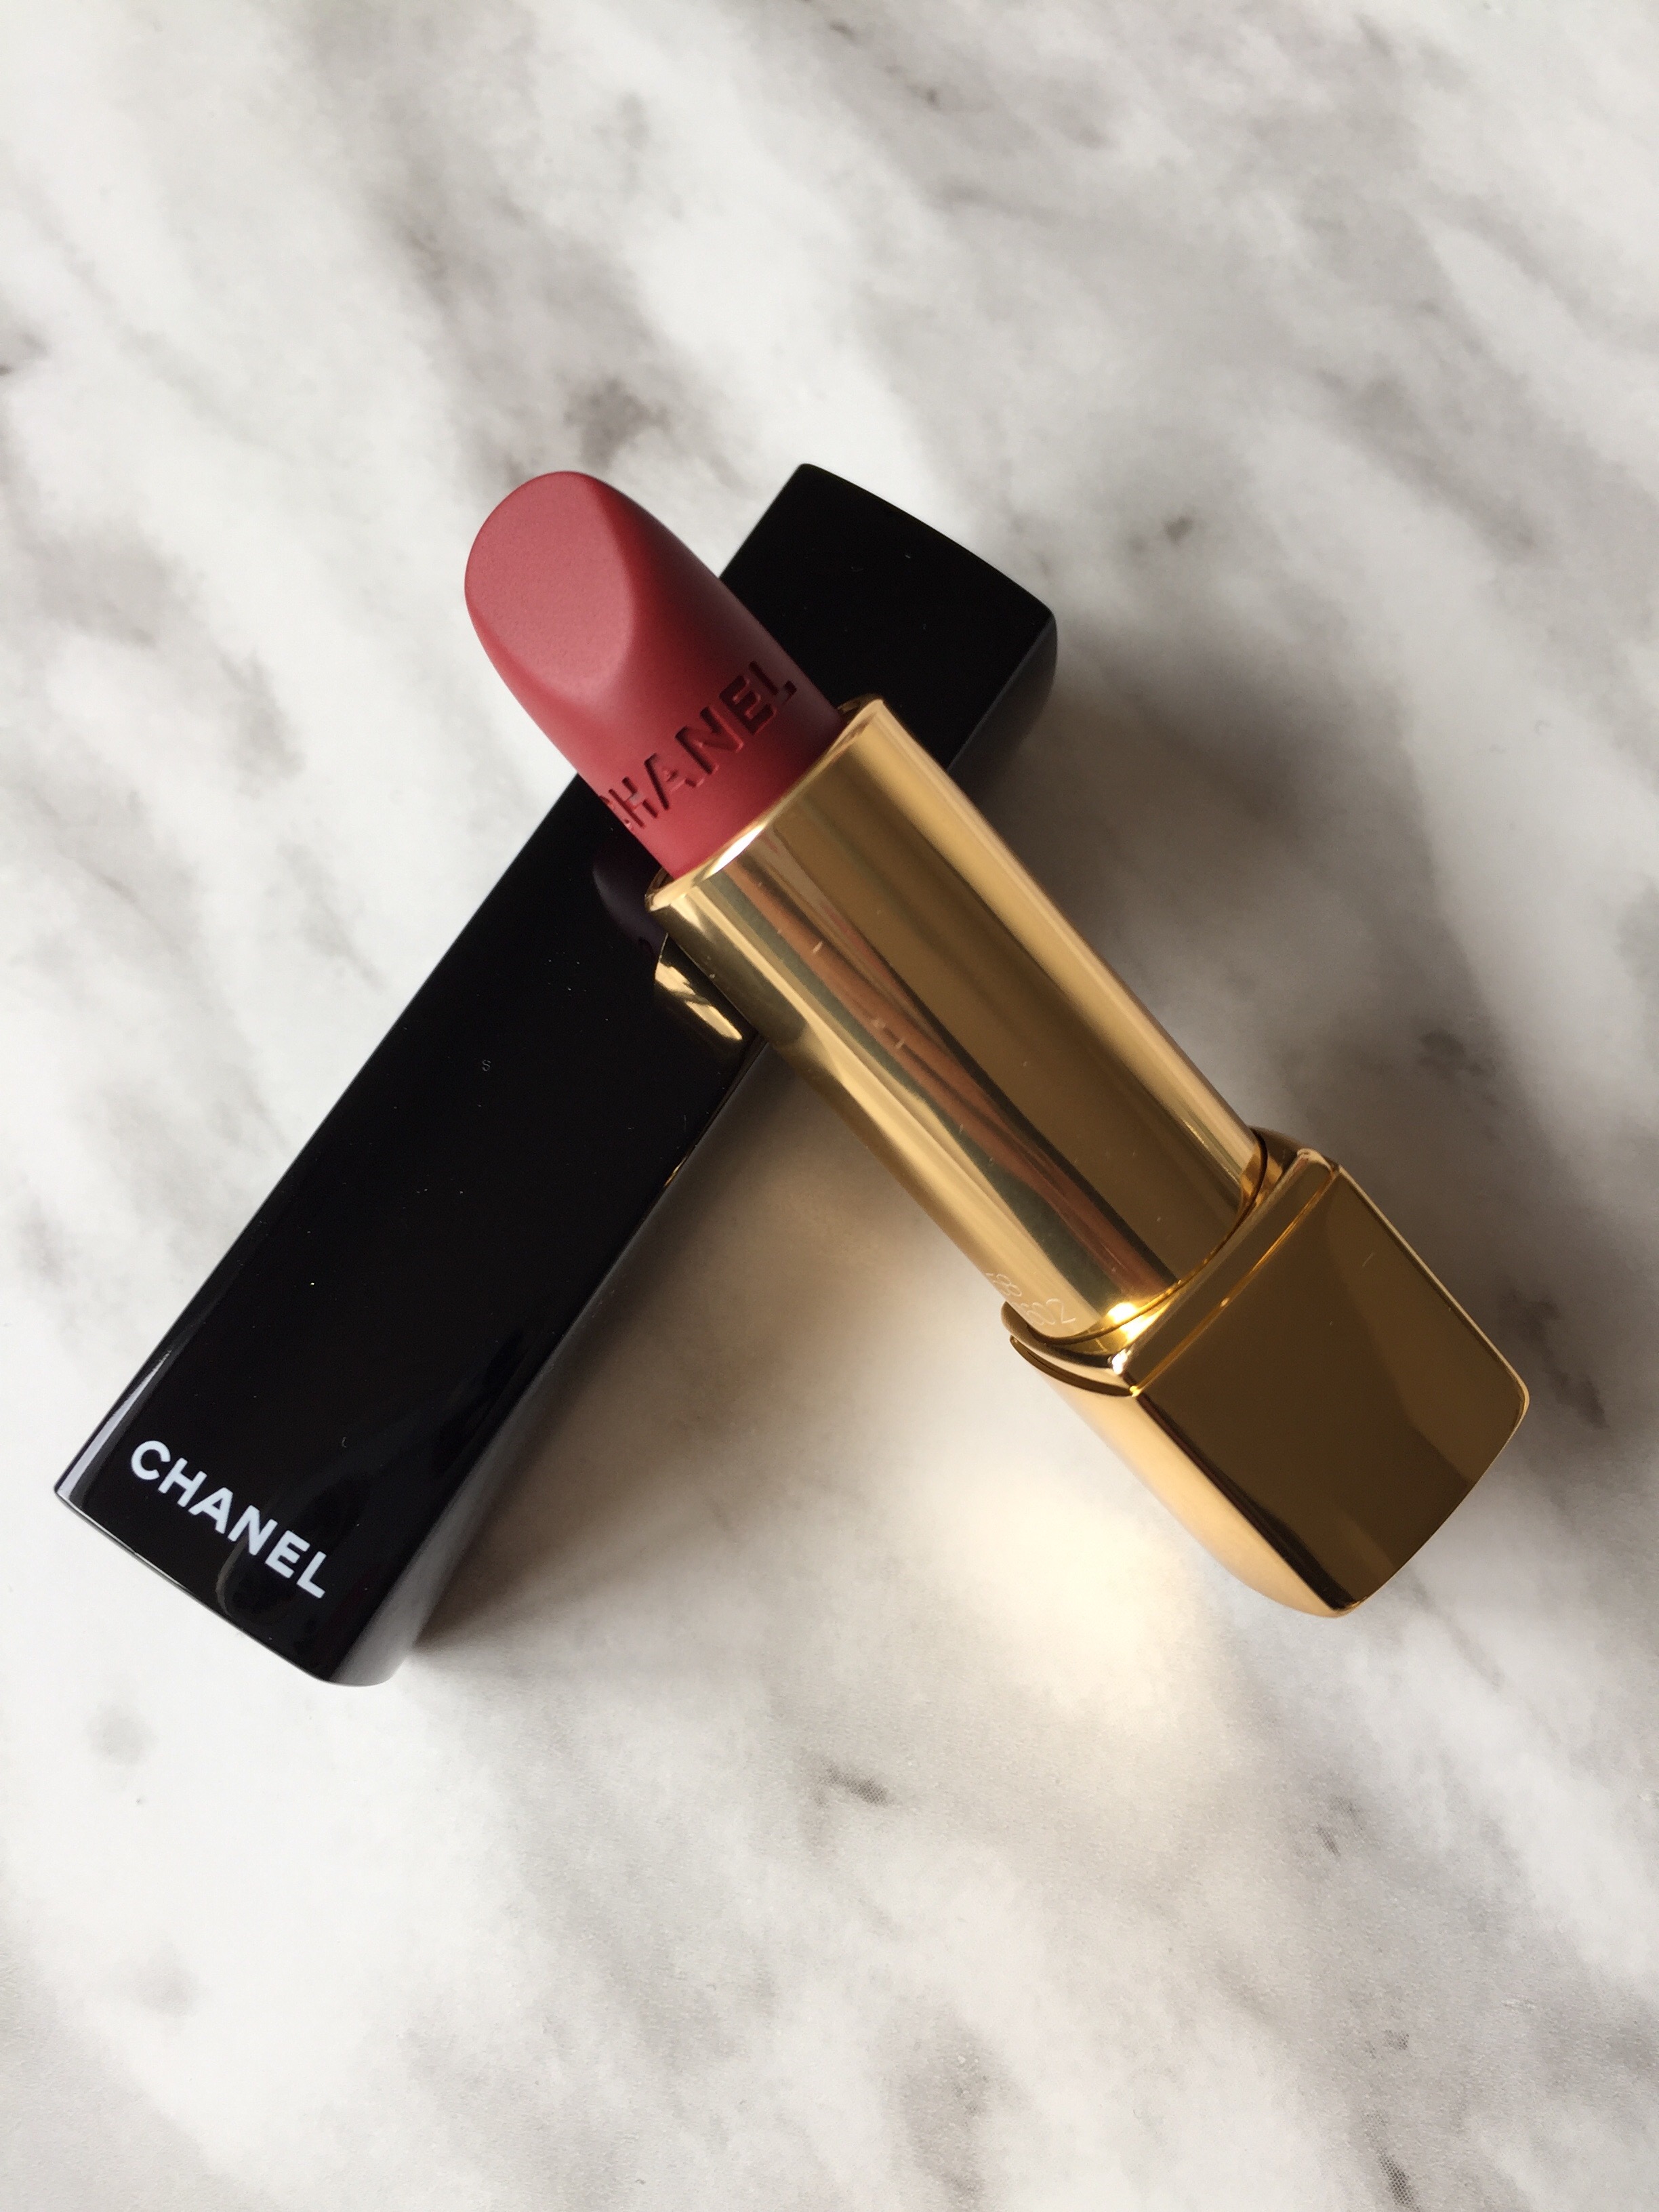 NEW Chanel Rouge Allure Velvet - # 58 Rouge Vie 0.12oz Womens Make Up